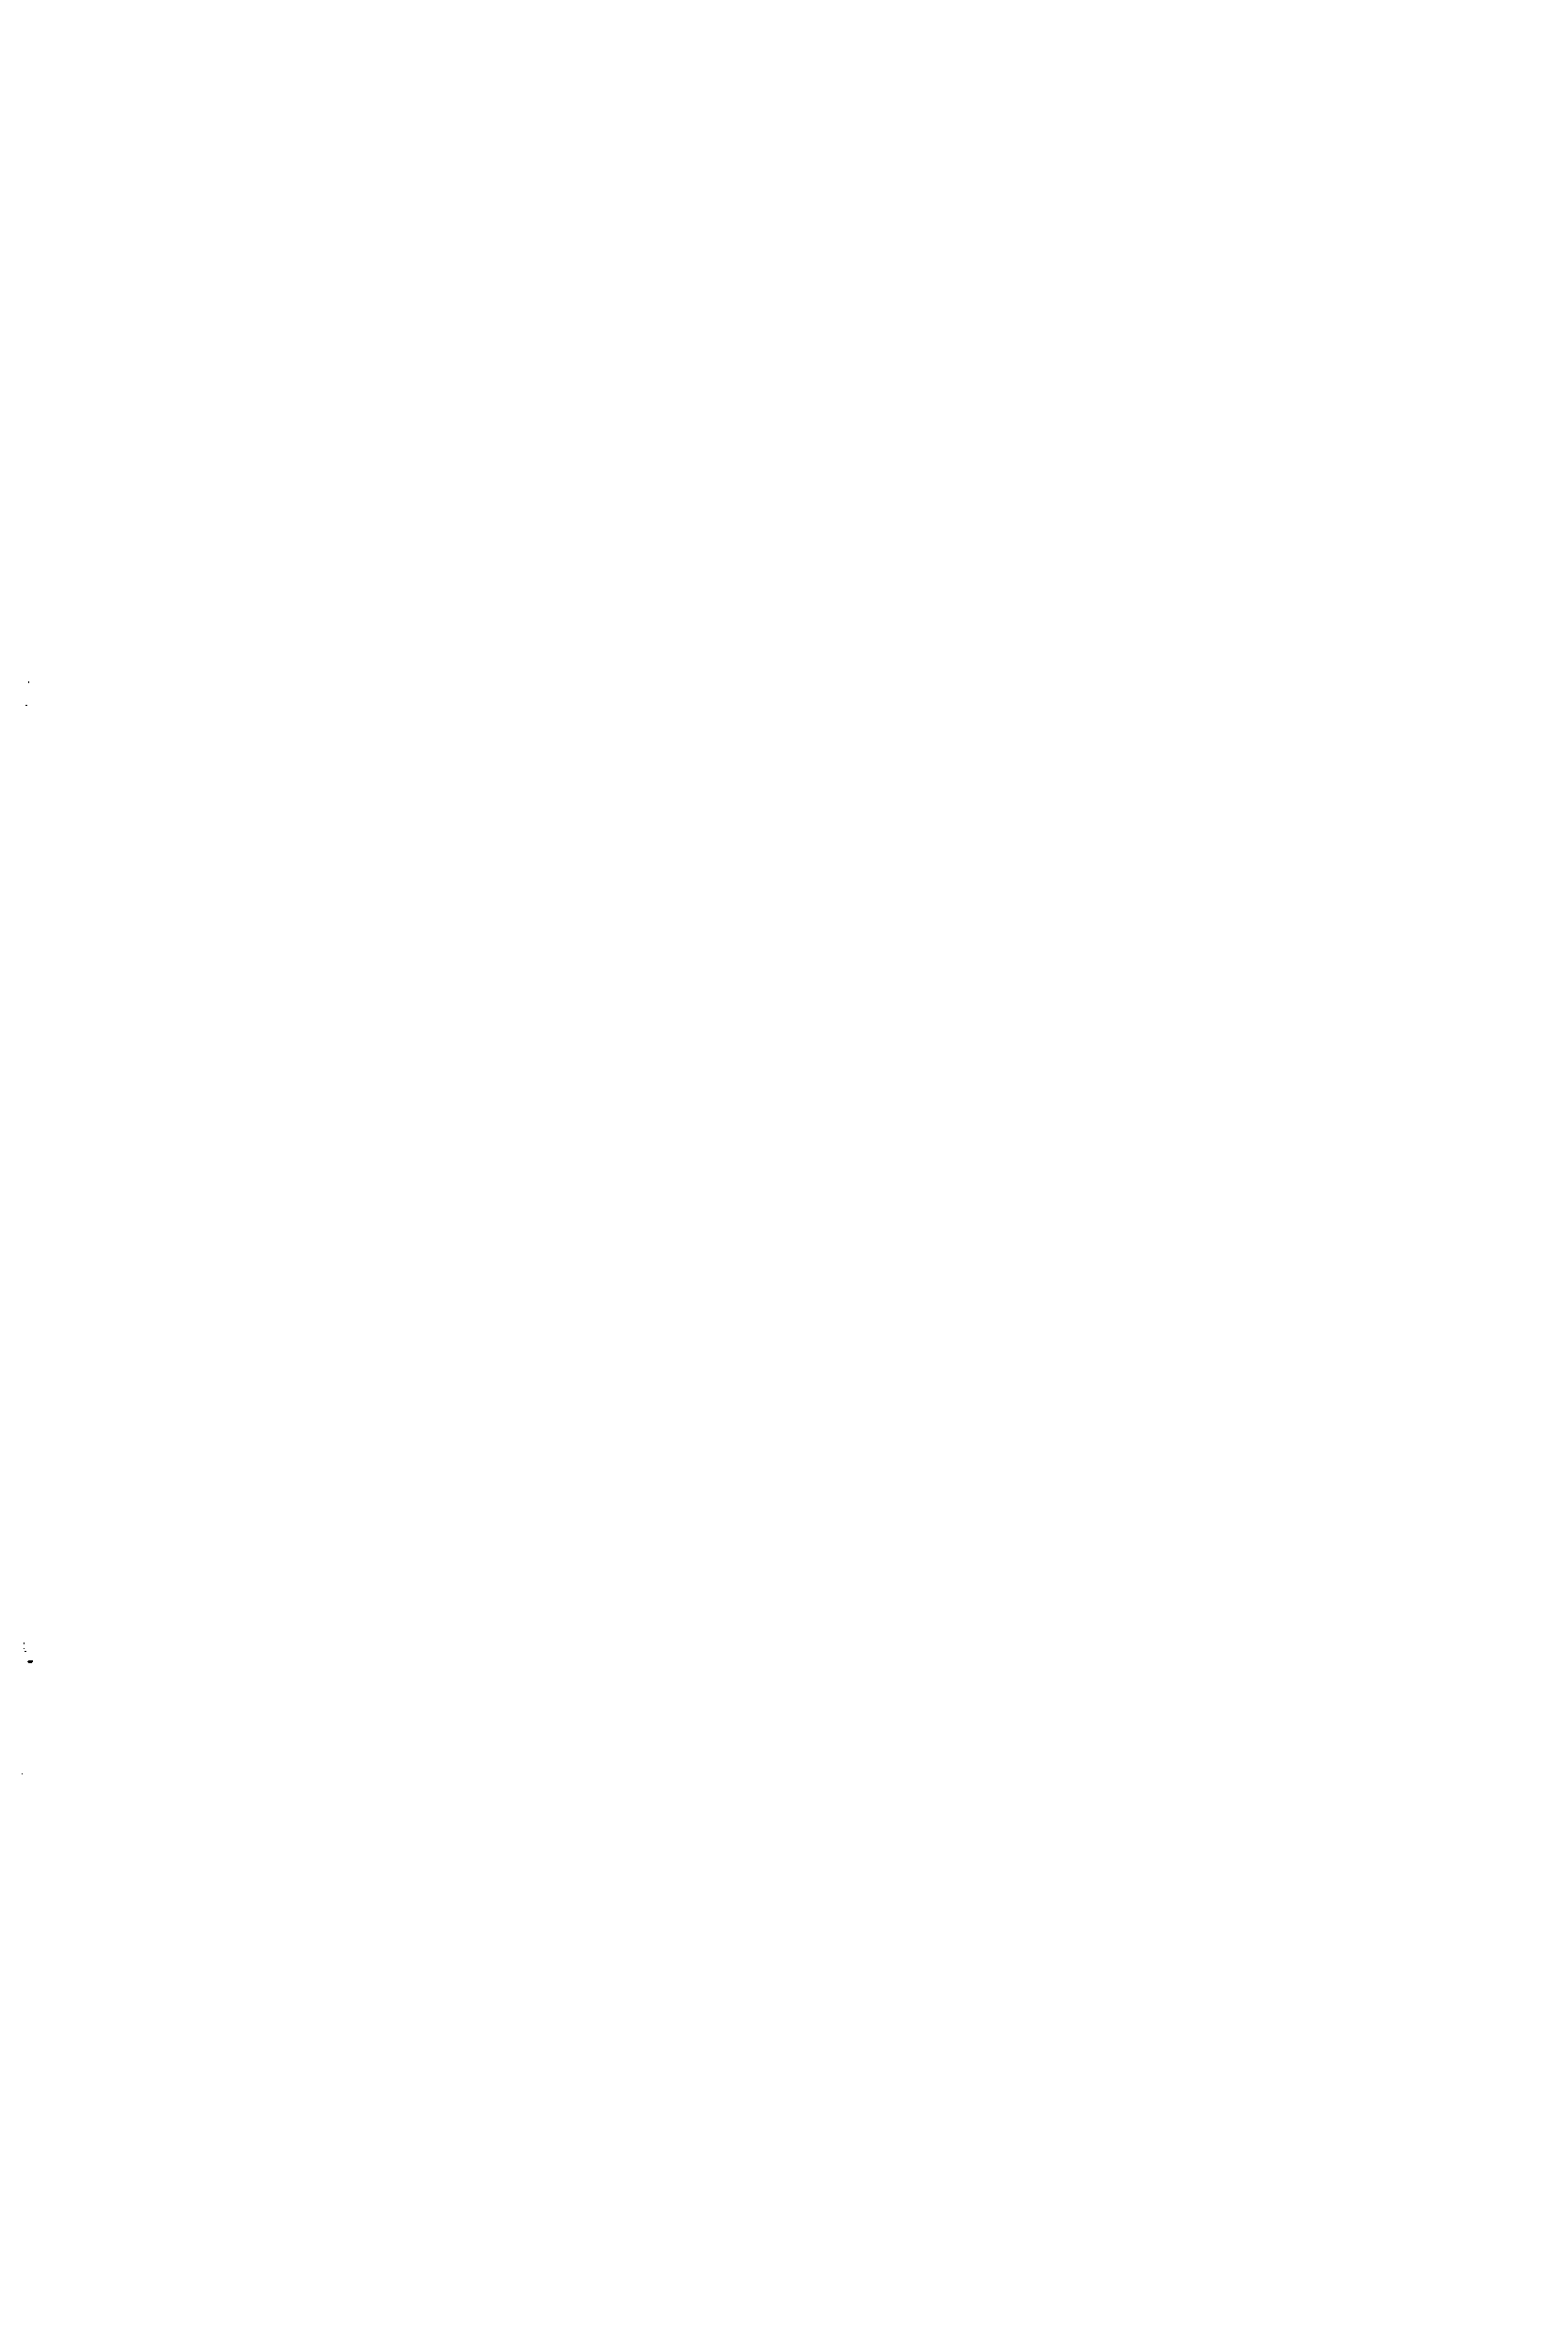 Рис. 7.8. Распространение очага коррозии в двухслойном никелевом покрытии с верхним хромовым слоем после 58 мес службы. ХЗОО [22]
